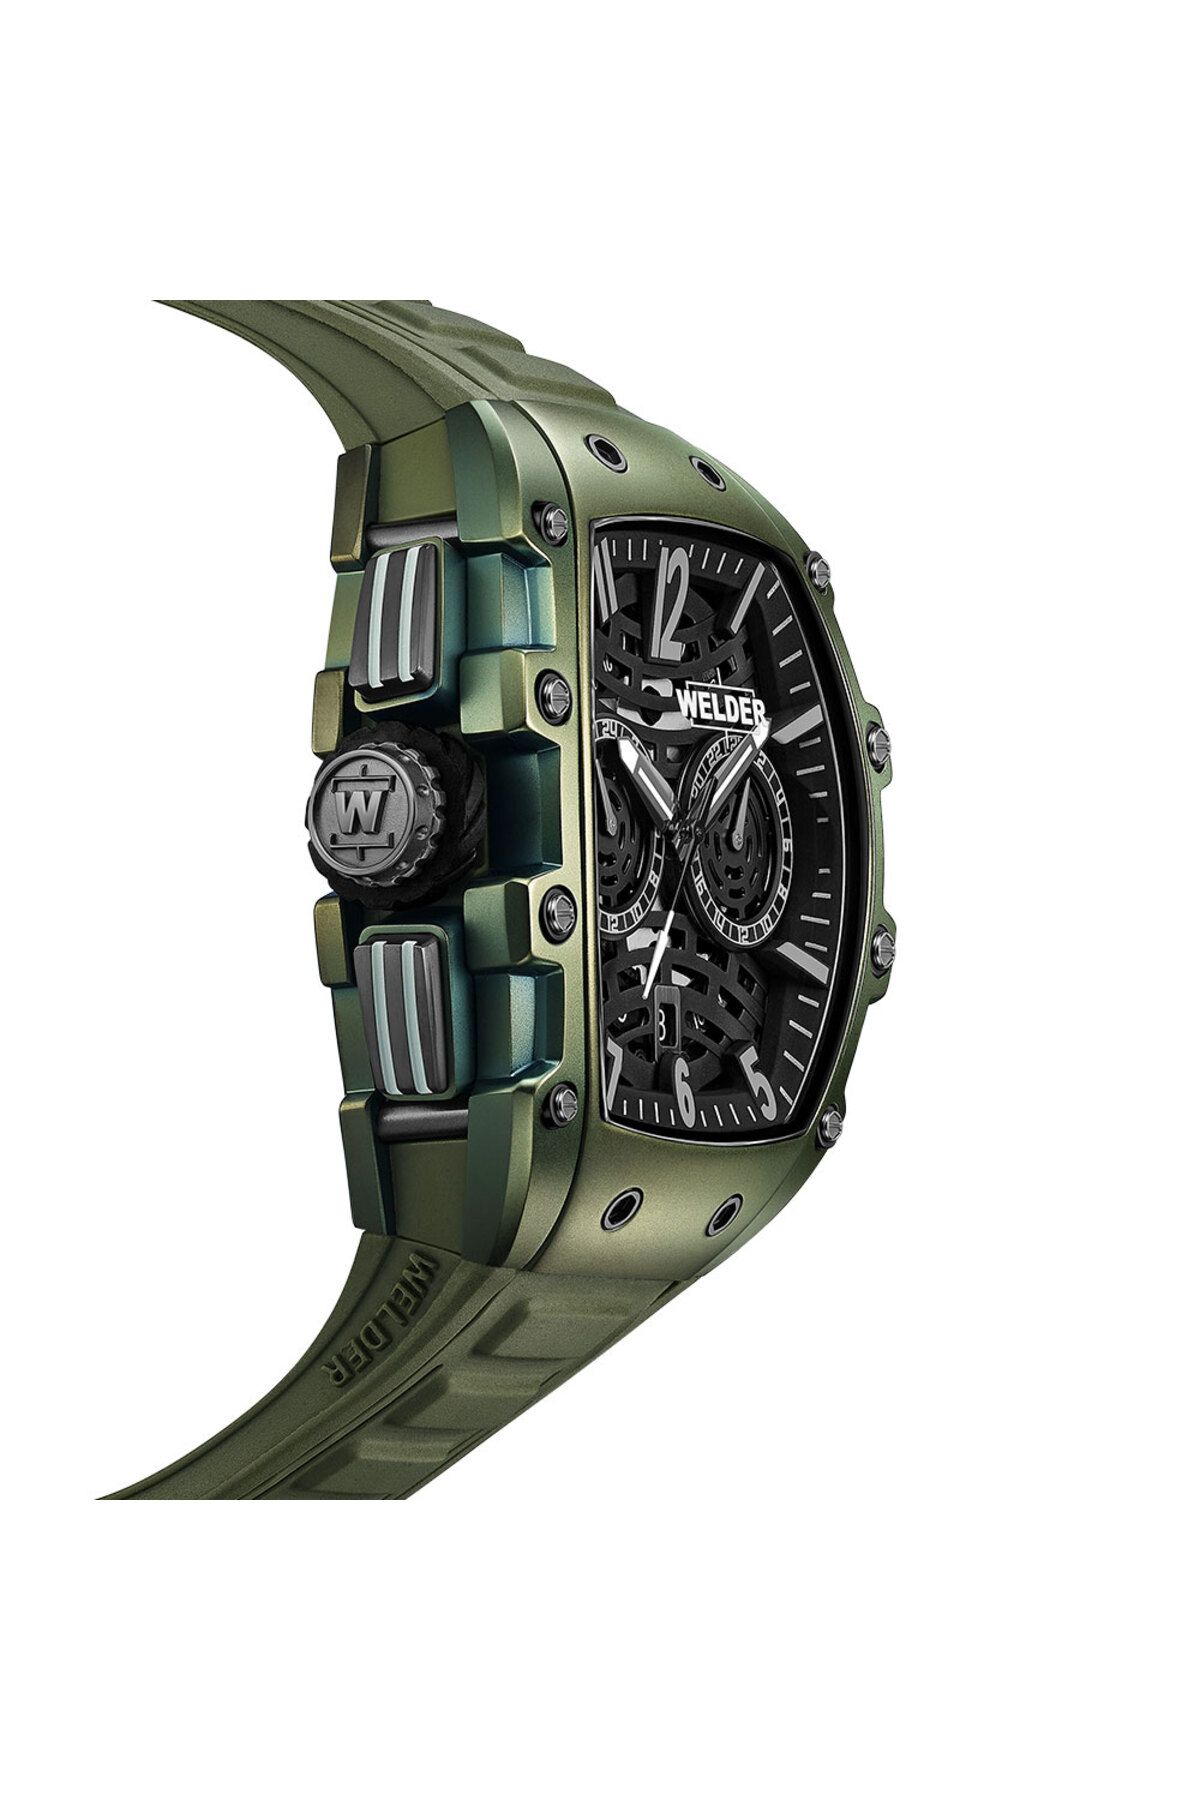 Welder Watches | W Hamond Luxury Watches